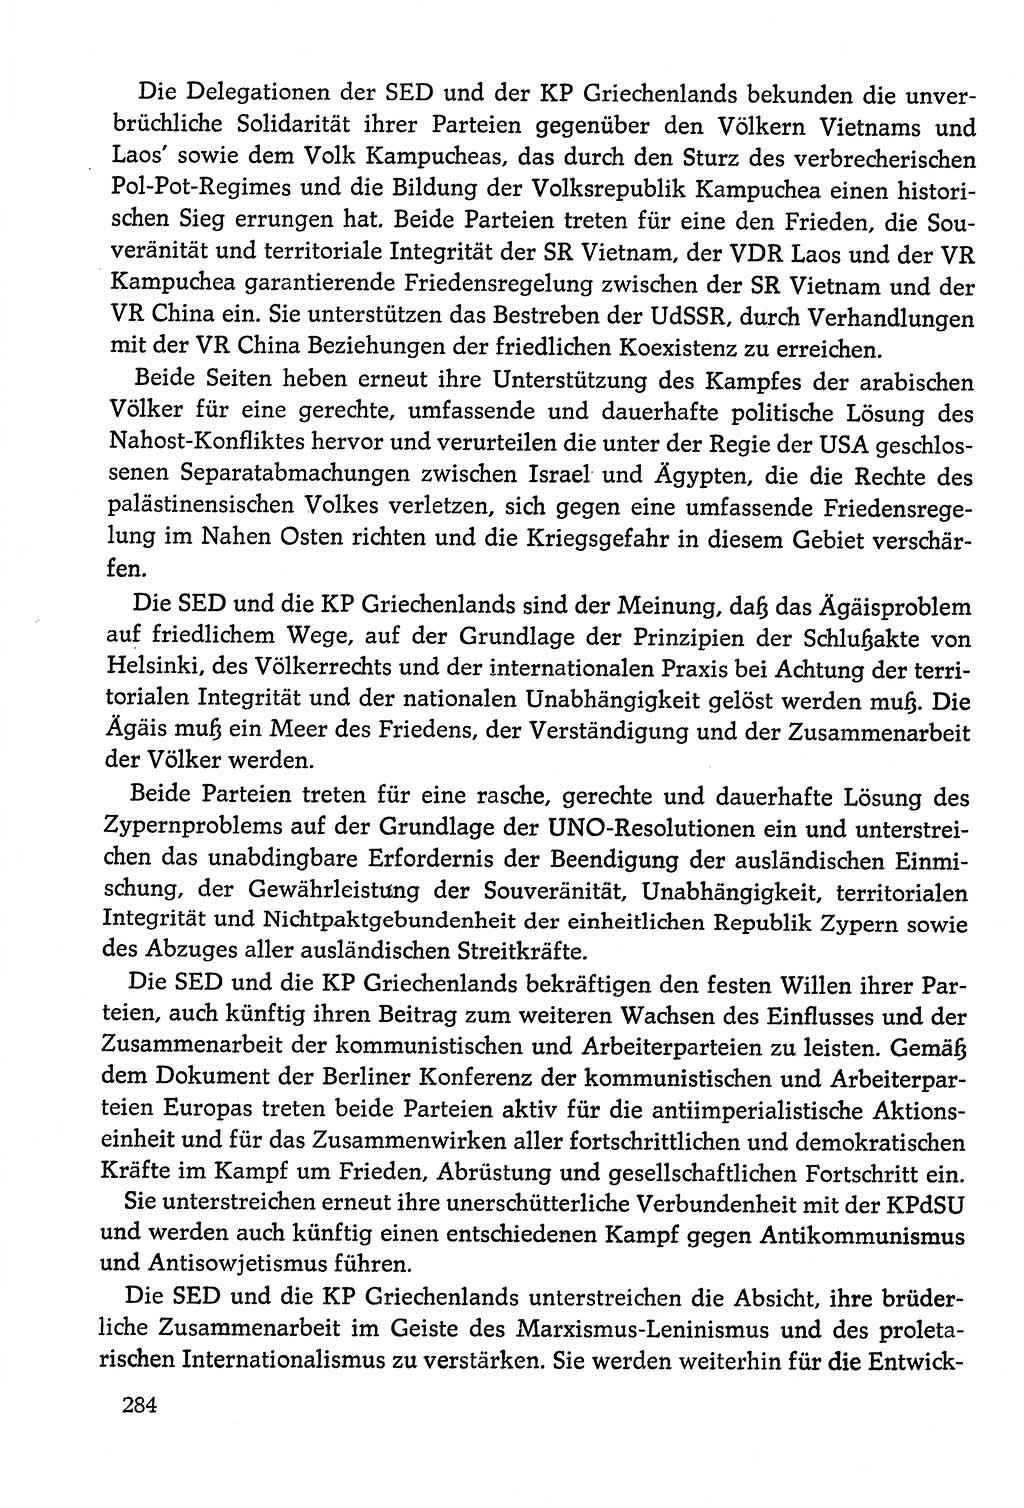 Dokumente der Sozialistischen Einheitspartei Deutschlands (SED) [Deutsche Demokratische Republik (DDR)] 1978-1979, Seite 284 (Dok. SED DDR 1978-1979, S. 284)